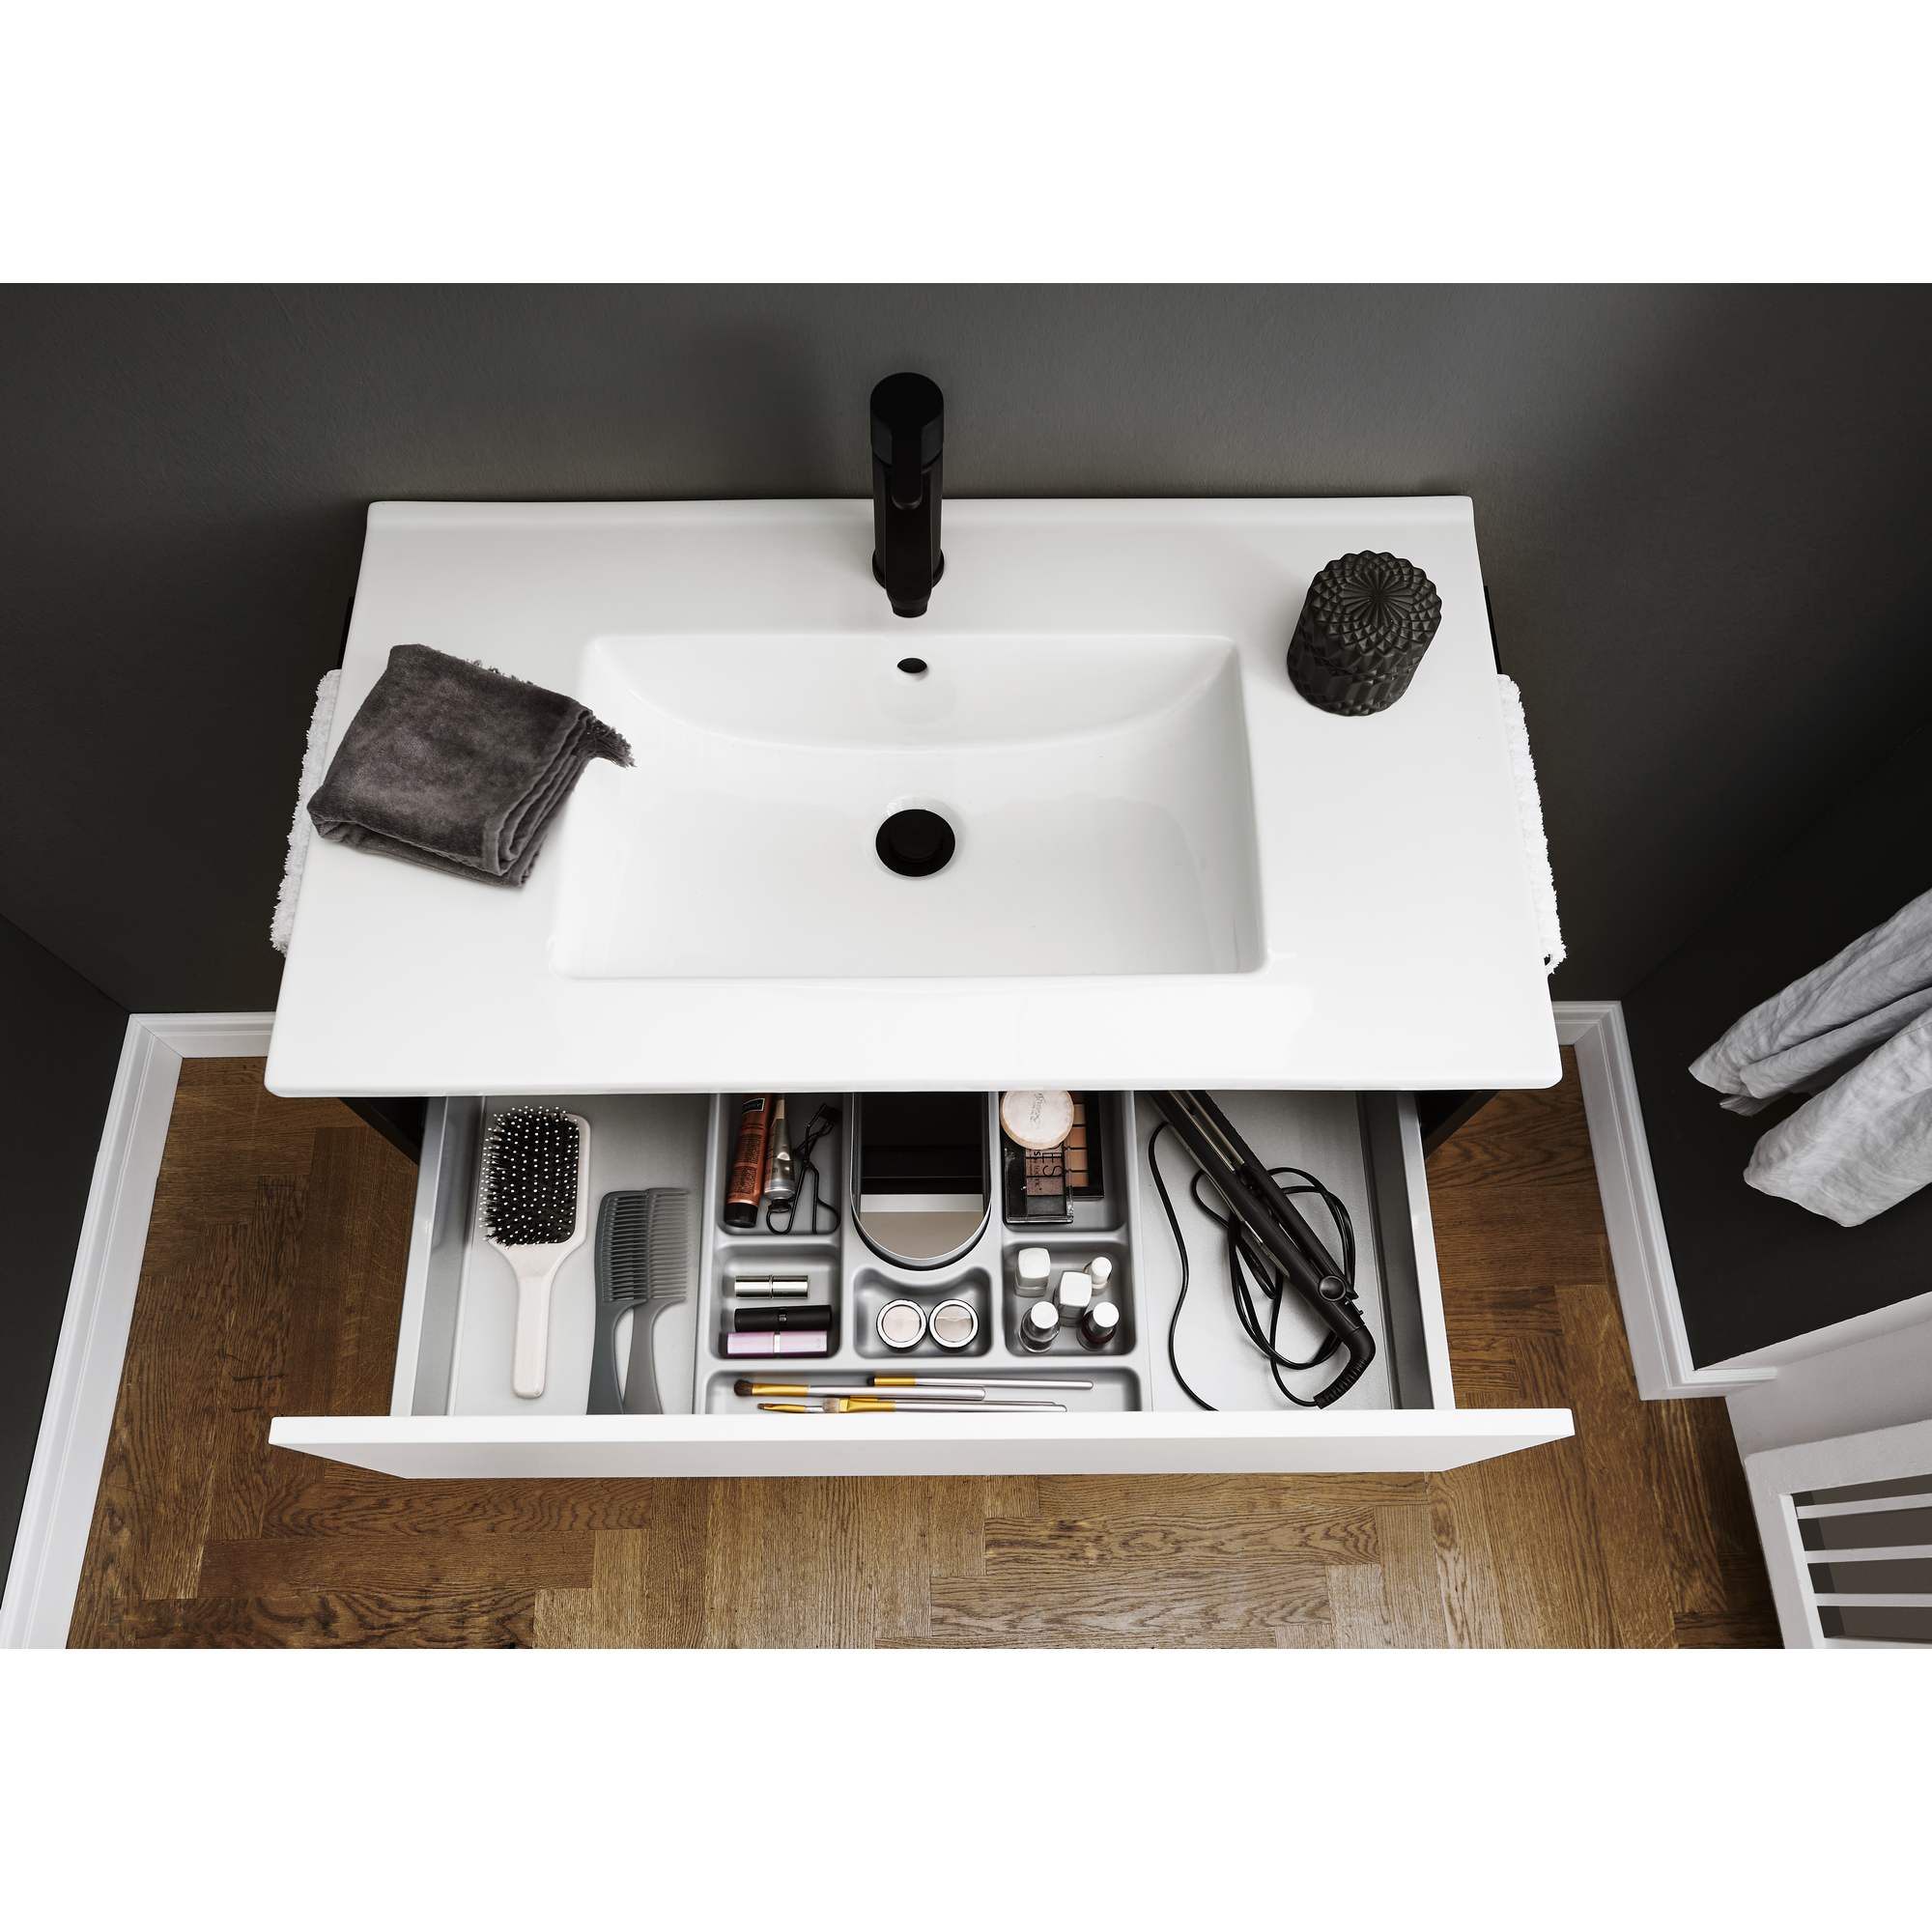 Waschtischunterschrank 'OPTIpremio 2510clarus' weiß, schwarz 82 x 47,8 x 47 cm + product picture